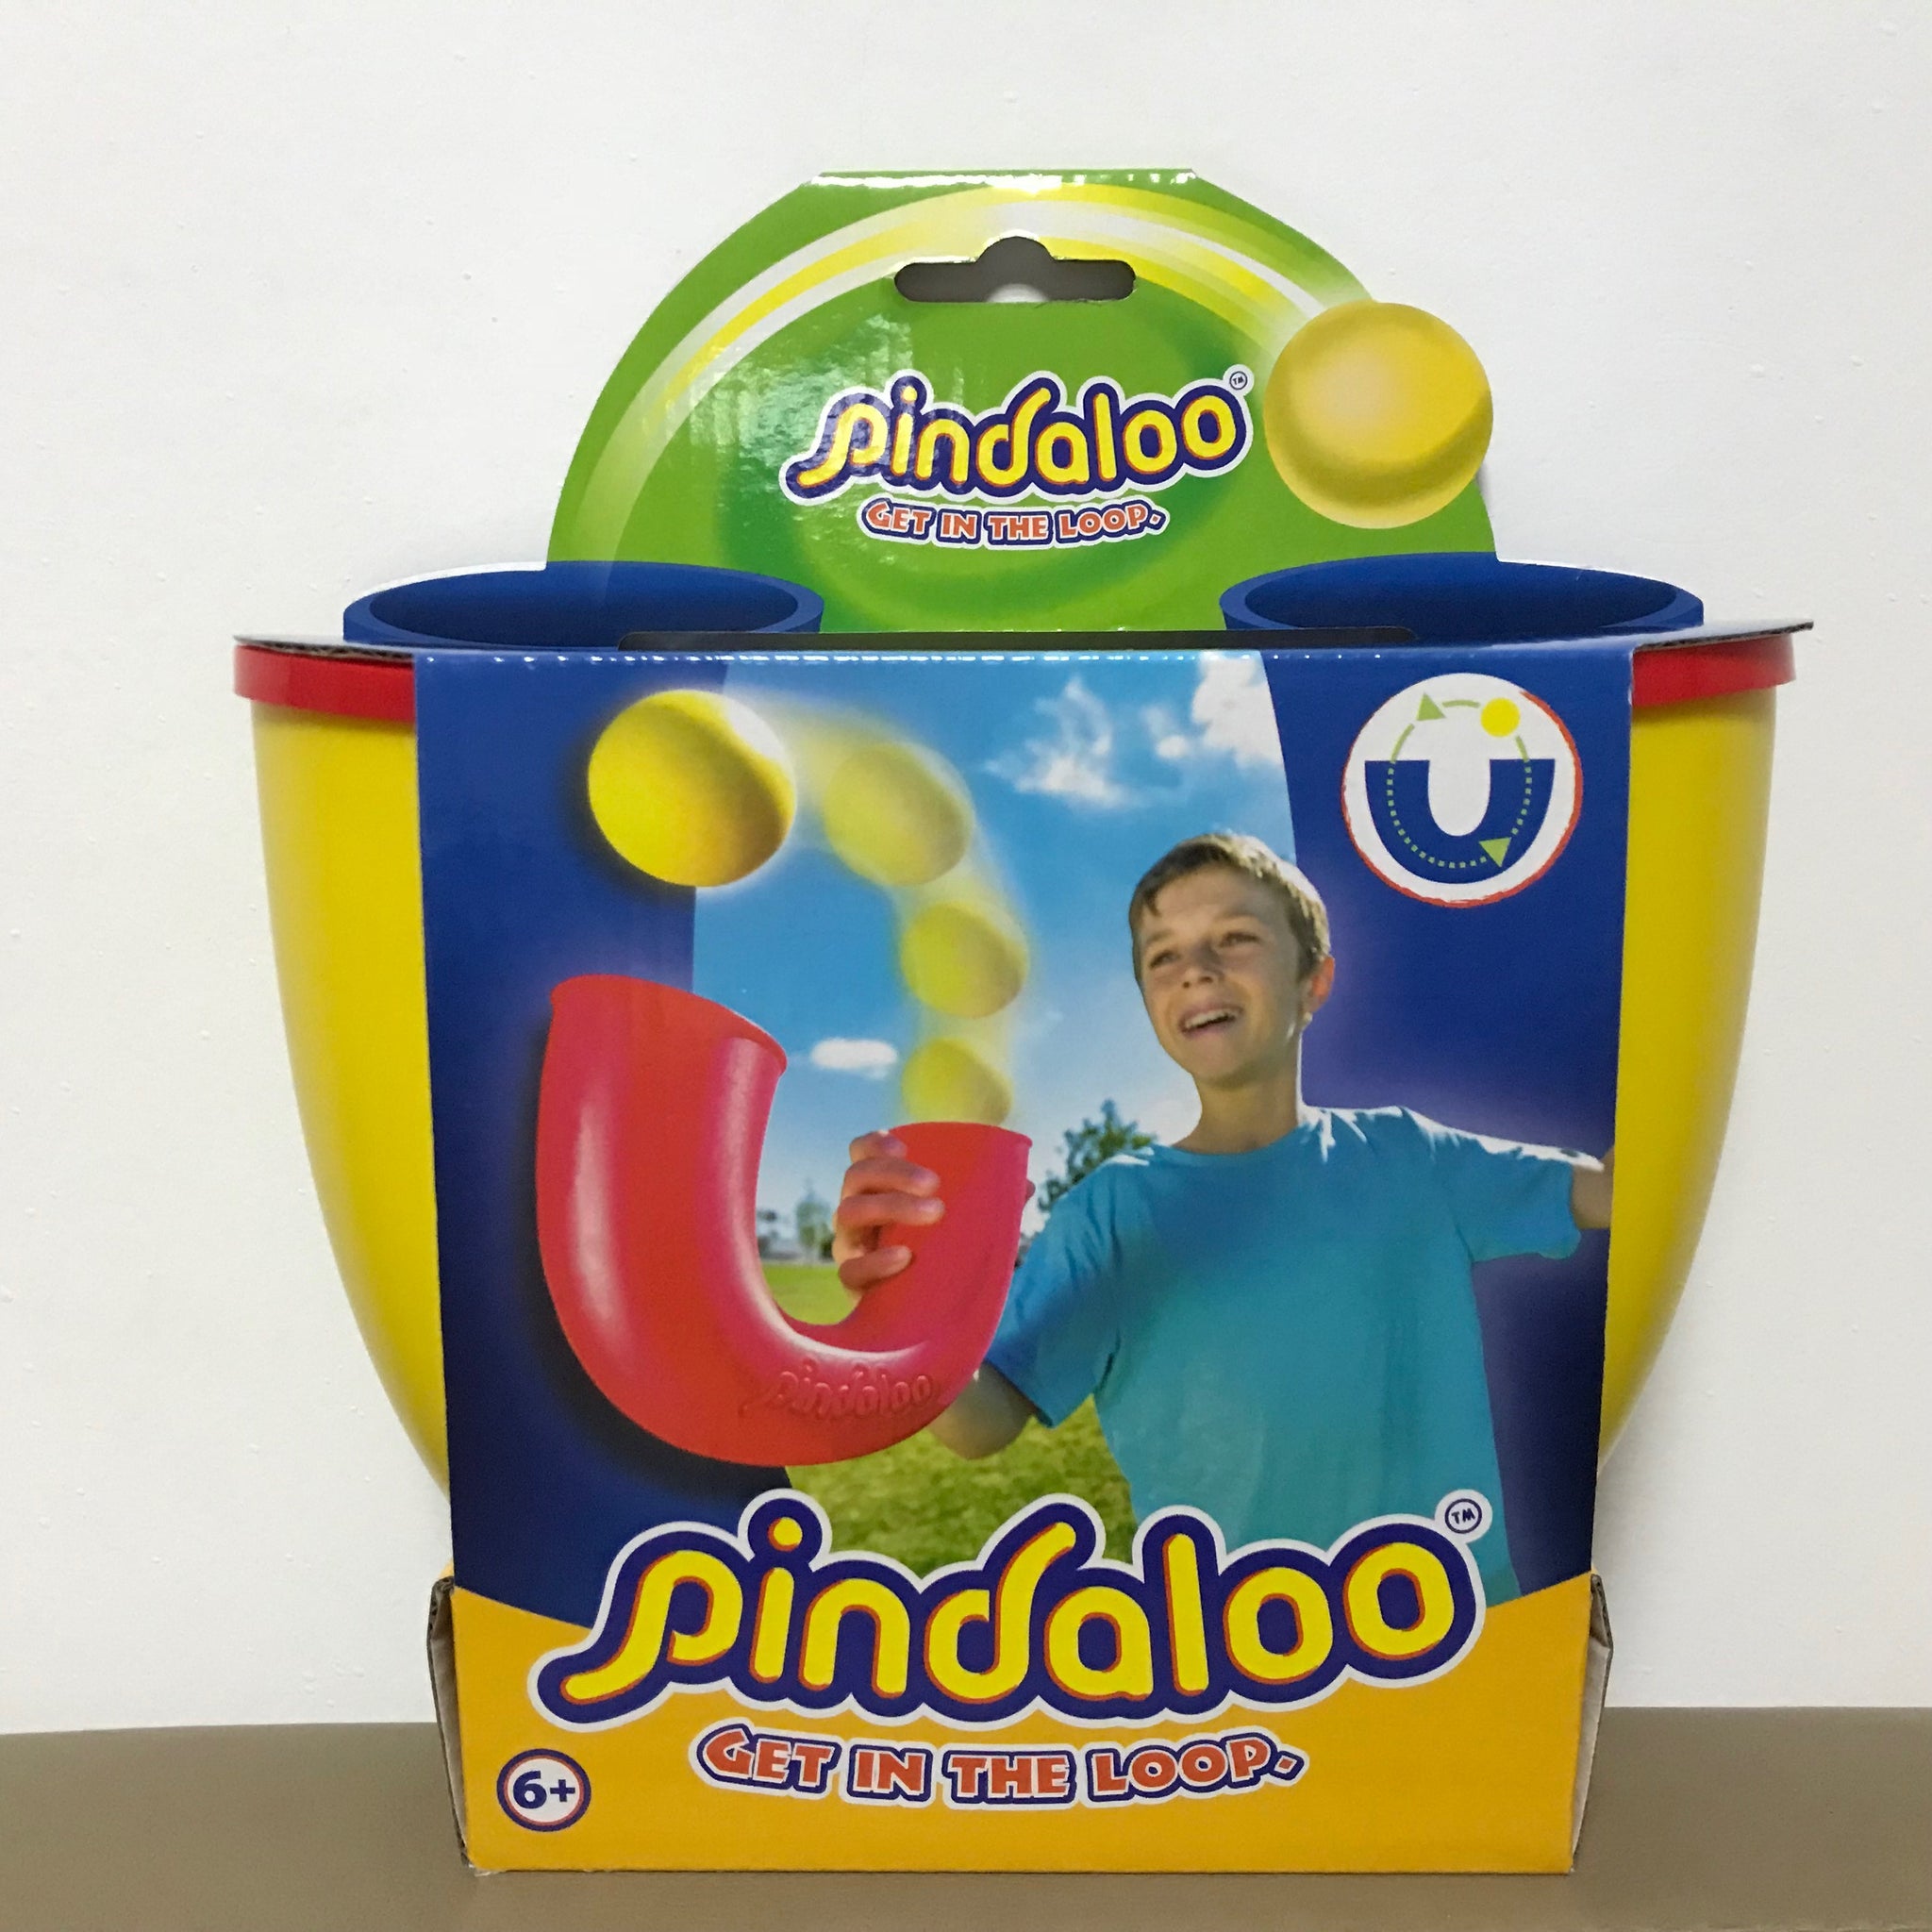 pindaloo toy price